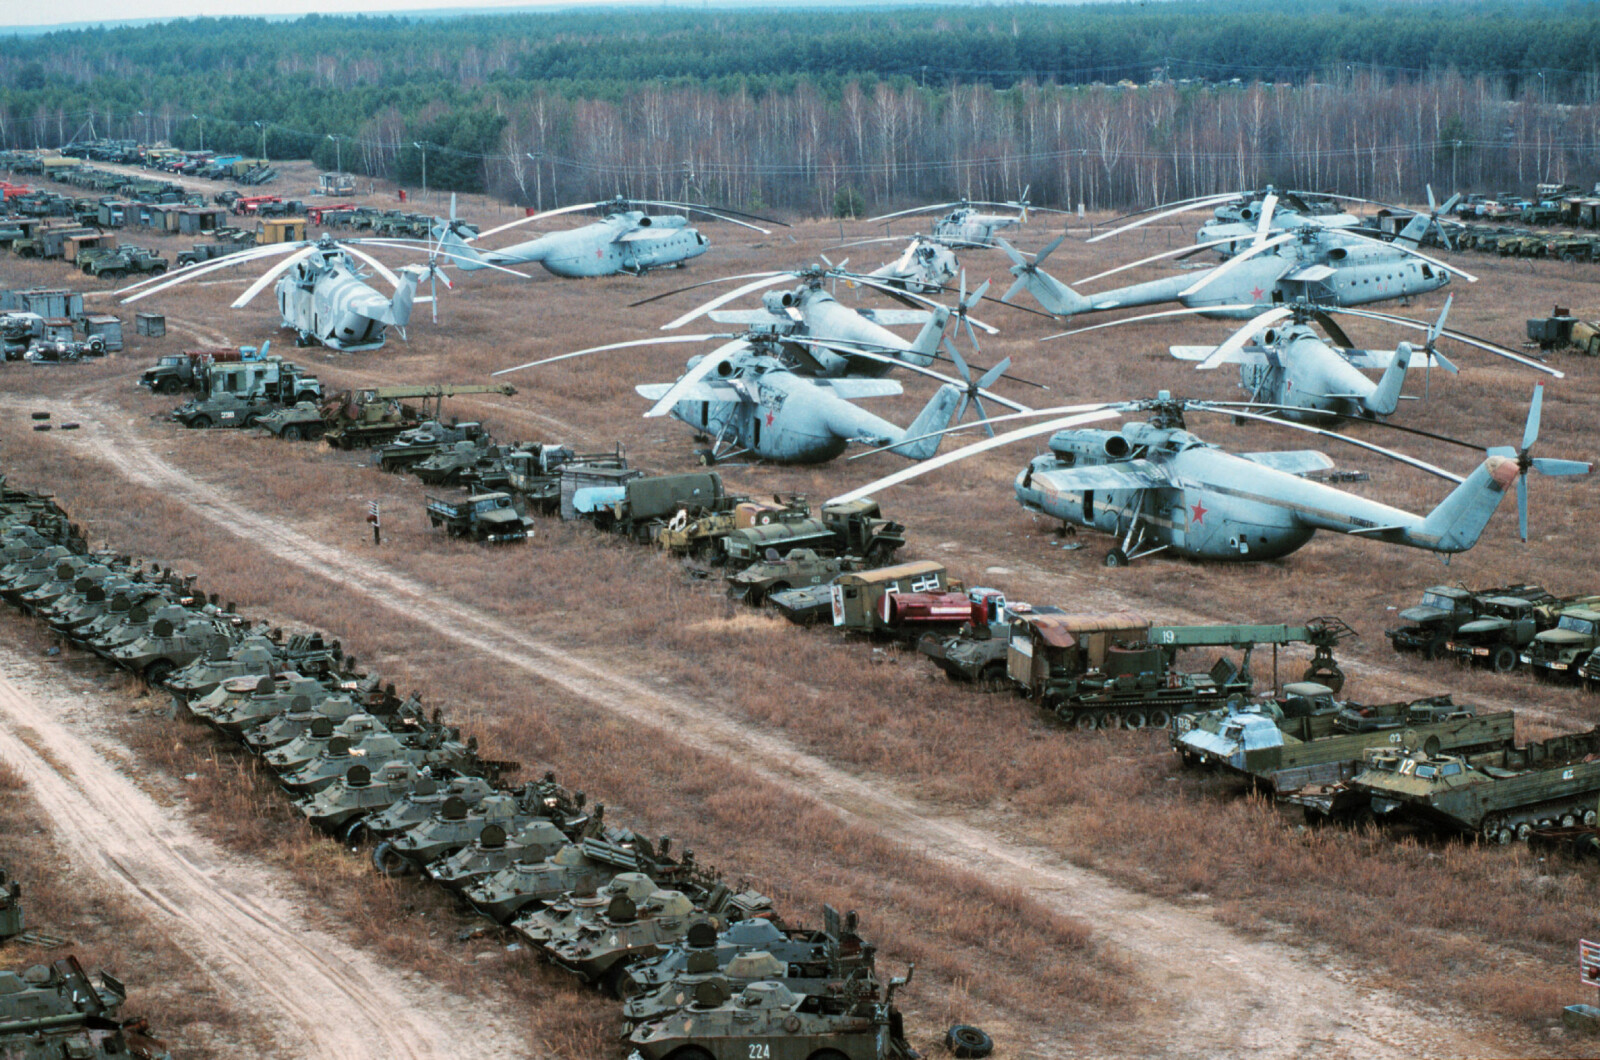 <b>LANDET FOR ALLTID:</b> Helikoptrene ble brukt til å dumpe slukkemidler på den brennende Tsjernobyl-reaktoren. Og så landet de på den hermetisk lukkede fartøyskirkegården. Militære kjøretøyer som ble brukt, gir dem selskap.